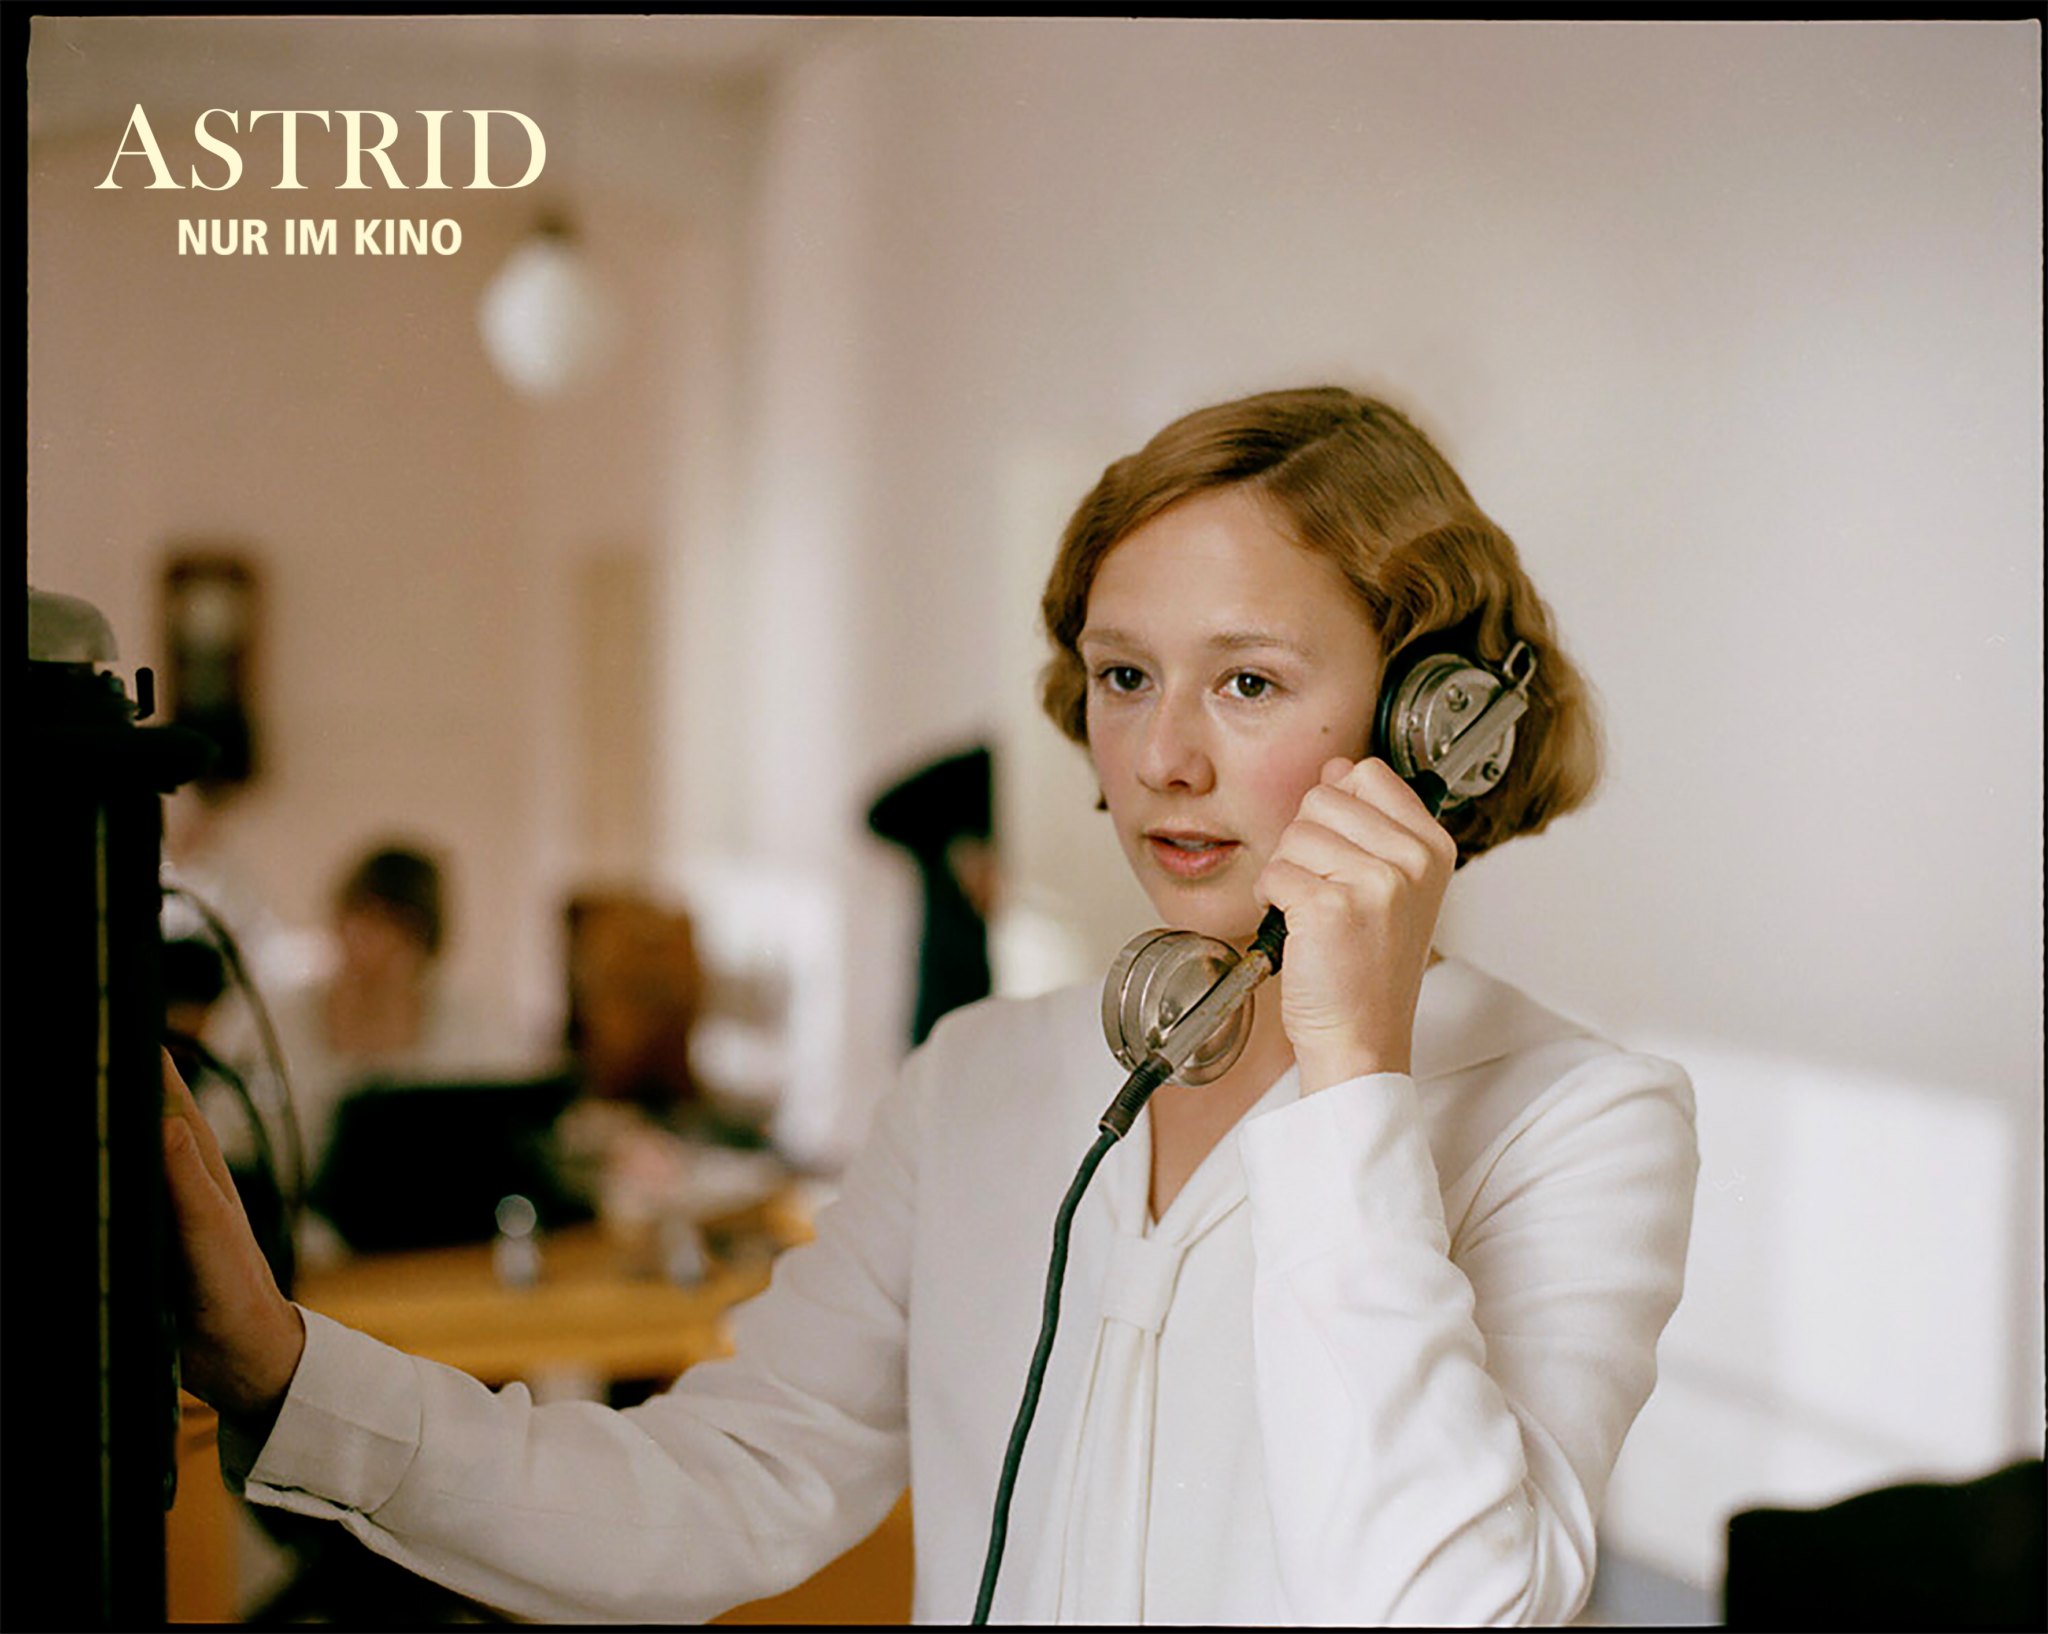 Filmstill aus "Astrid": Eine junge blonde Frau am Telefon